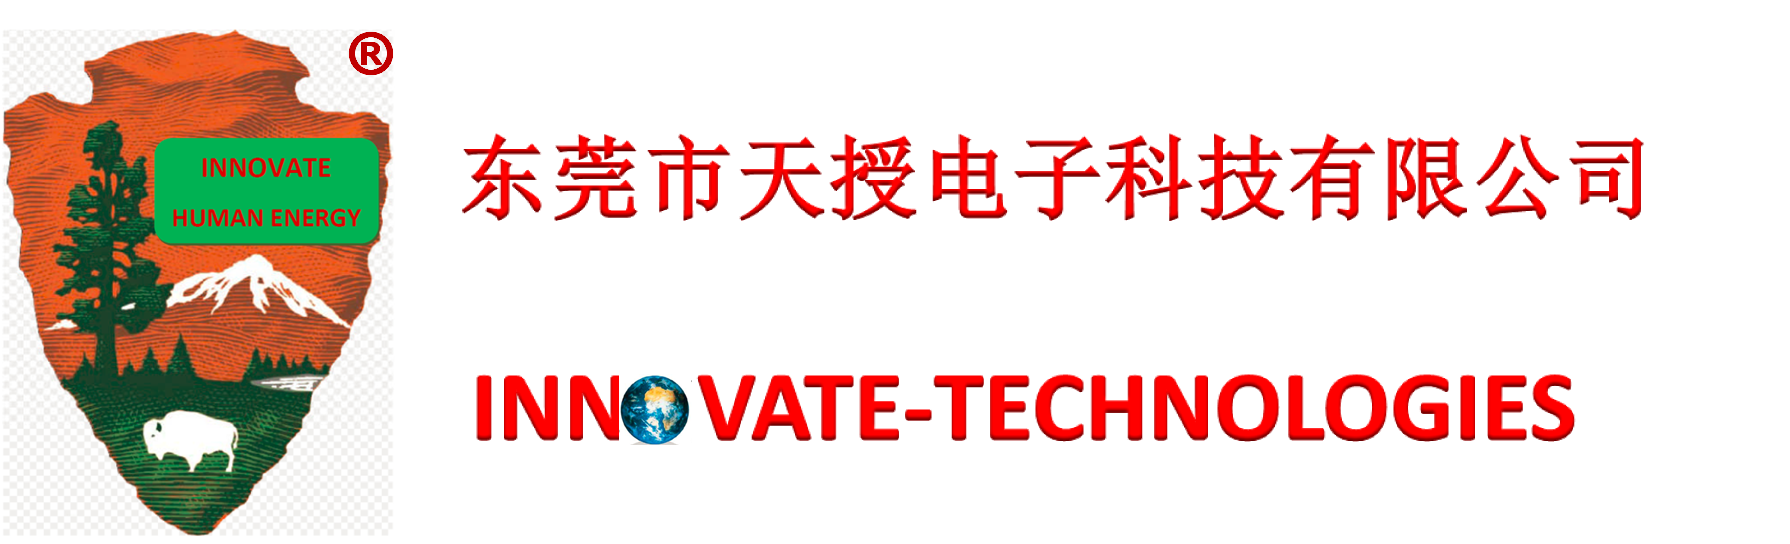 东莞市天授电子科技有限公司